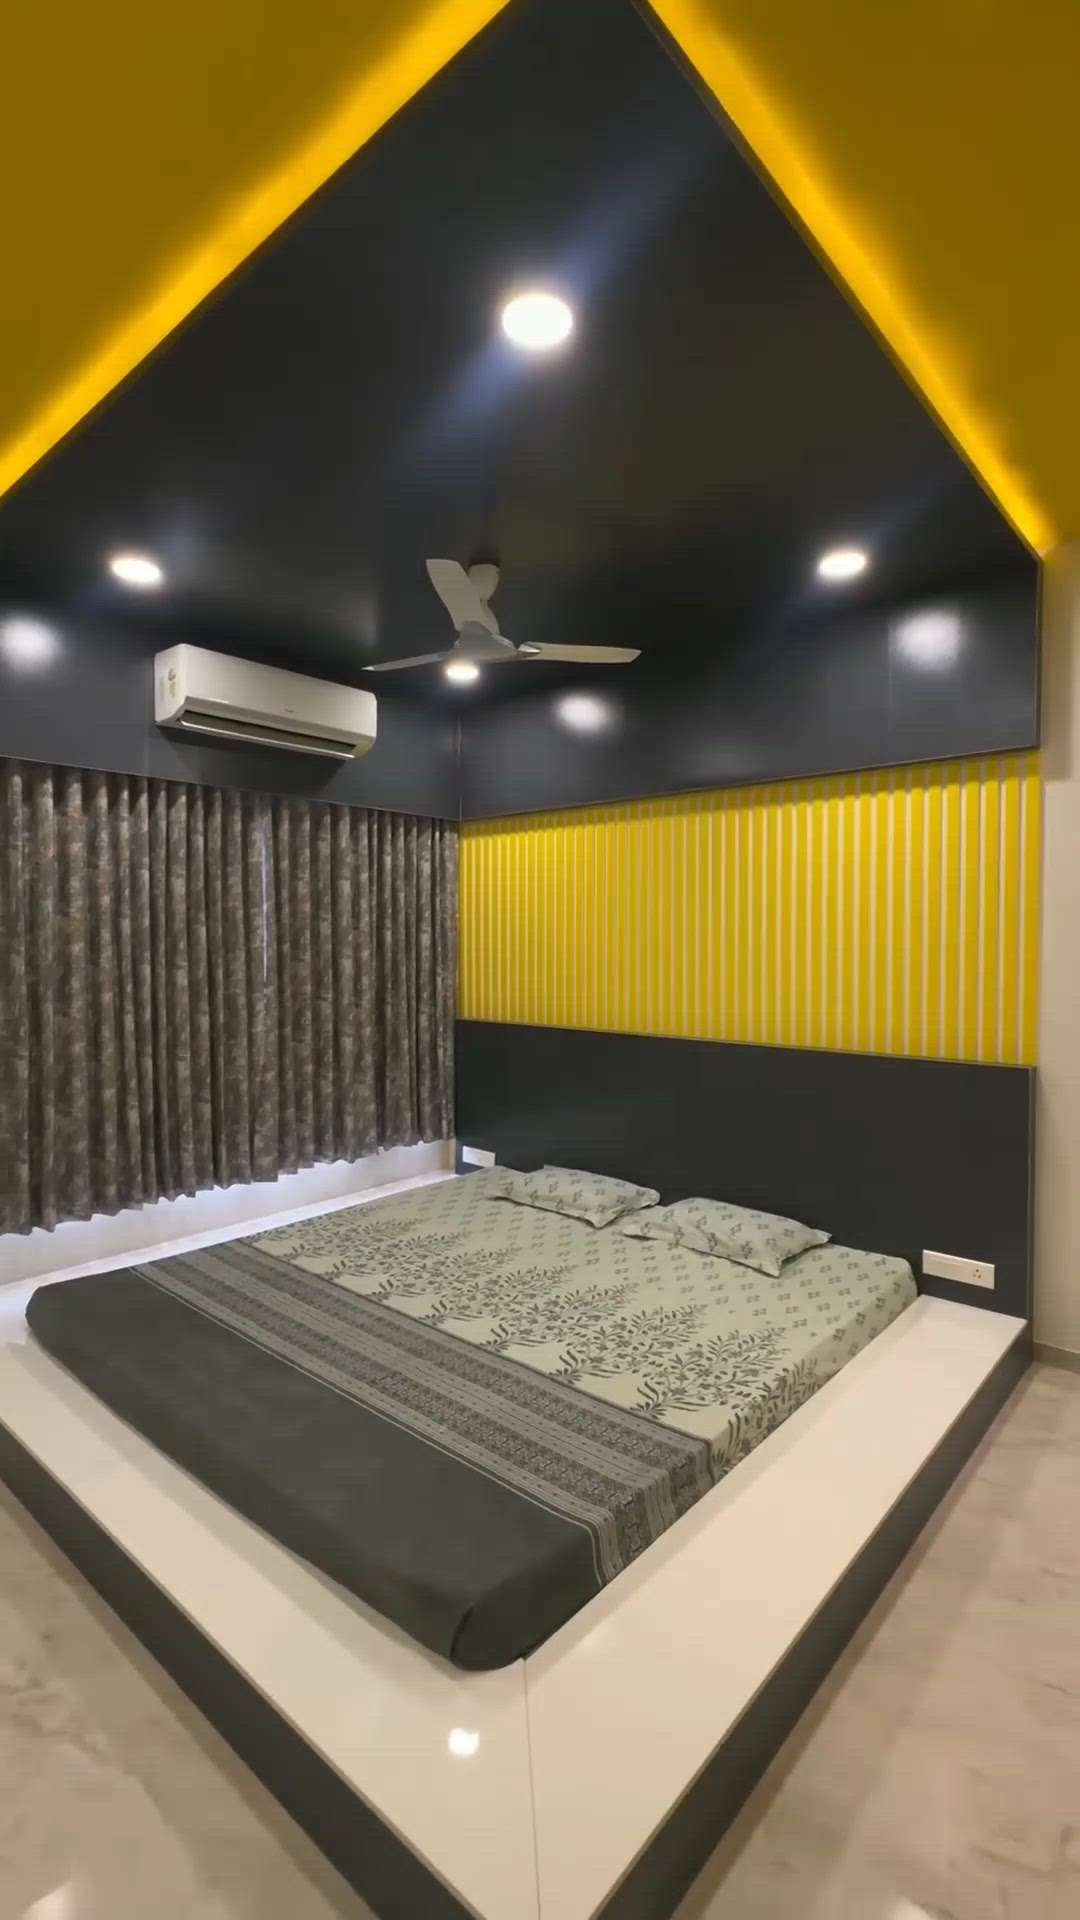 #BedroomDecor  #MasterBedroom  #KingsizeBedroom  #combinatnationmica_